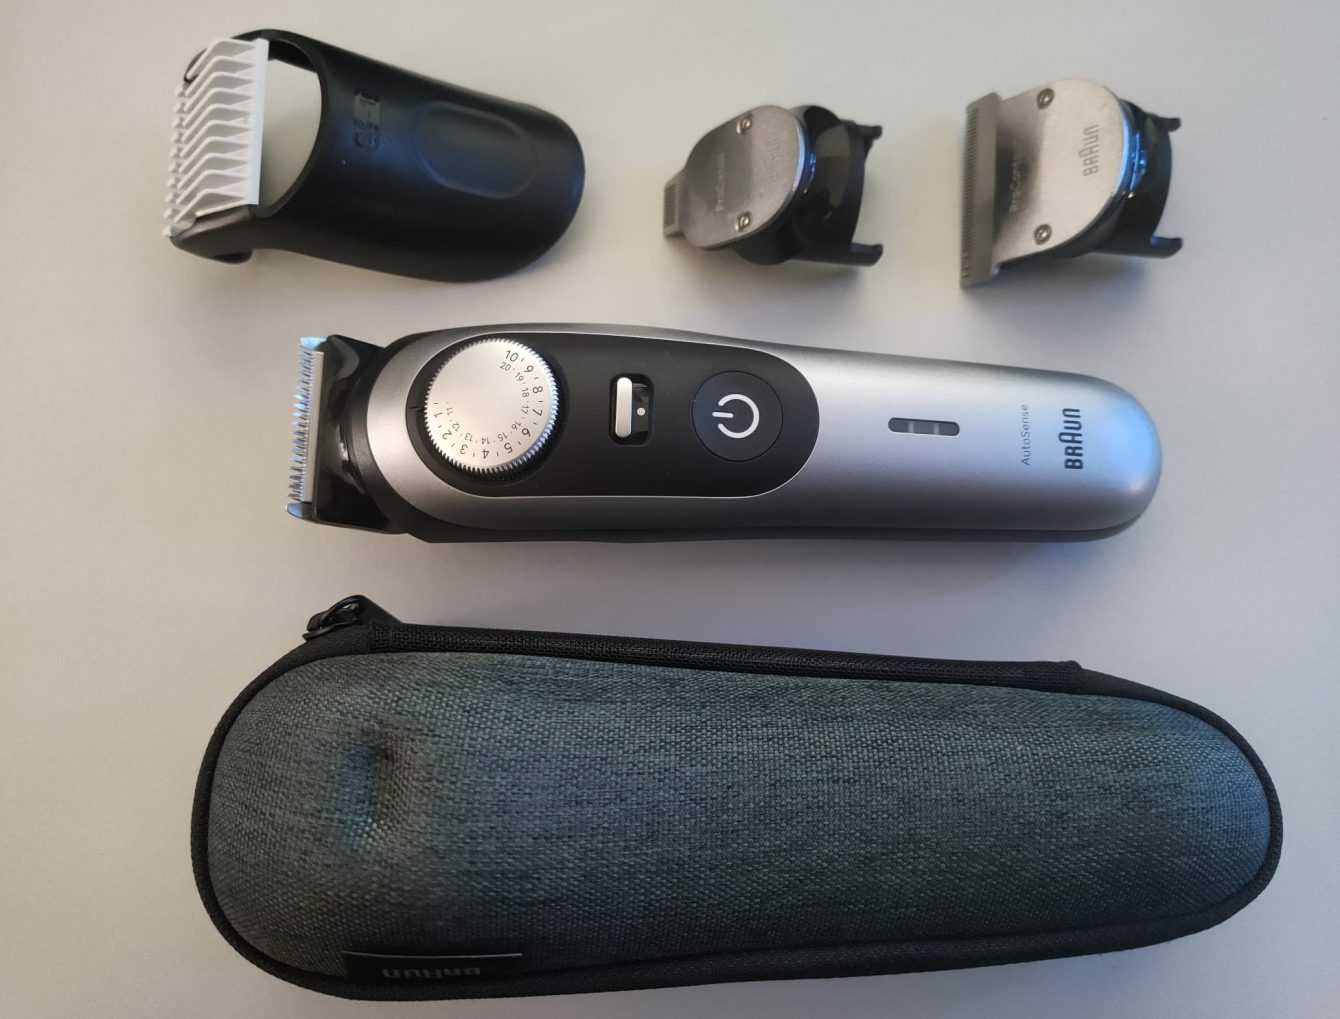 Braun Beard Trimmer 9 review: a unique beard trimmer